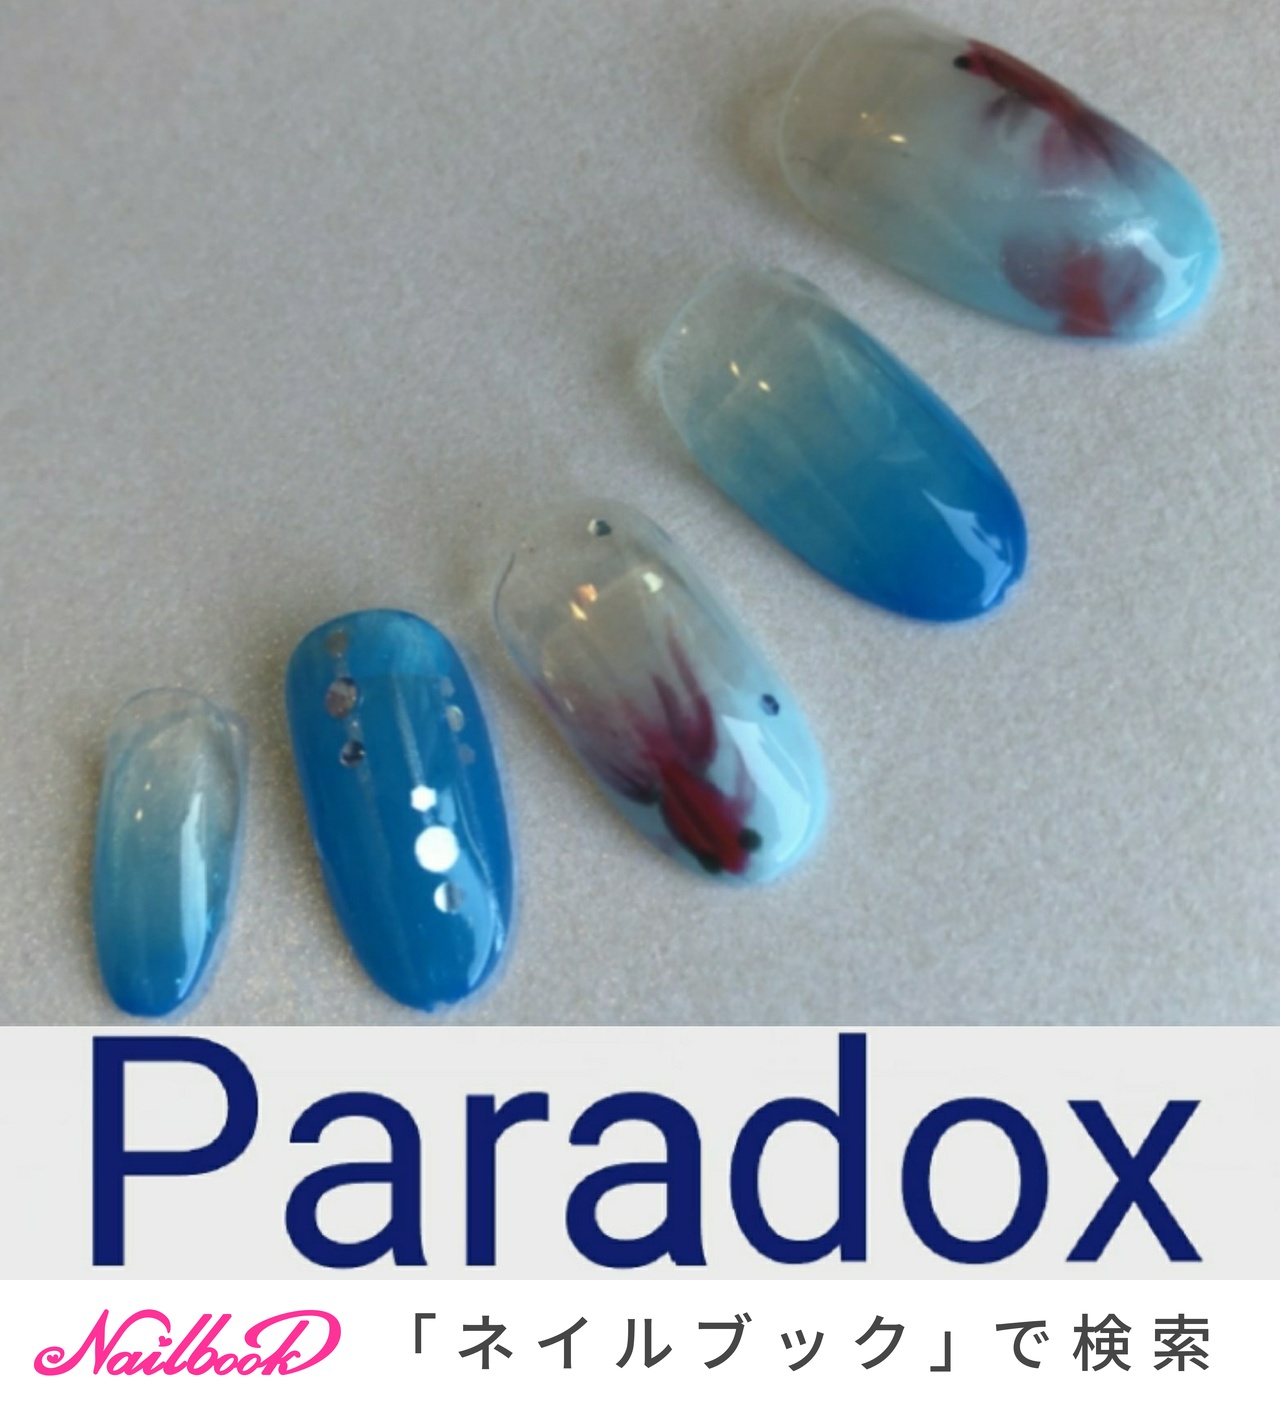 夏 海 浴衣 ハンド グラデーション Paradox パラドックス のネイルデザイン No ネイルブック